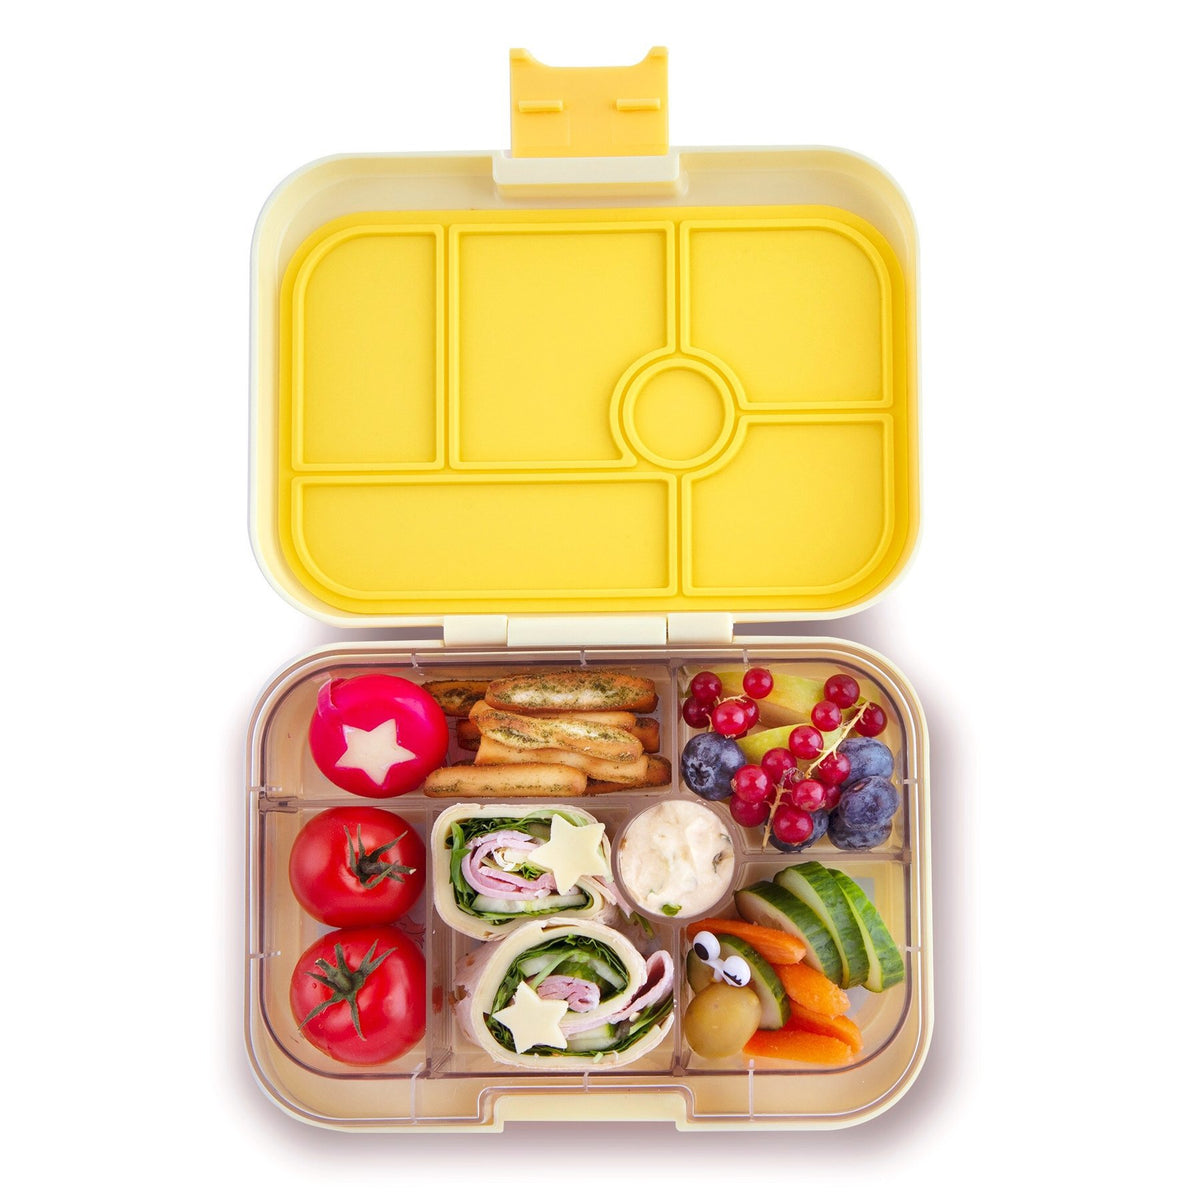 yumbox-original-sunburst-yellow-6-compartment-lunch-box- (2)